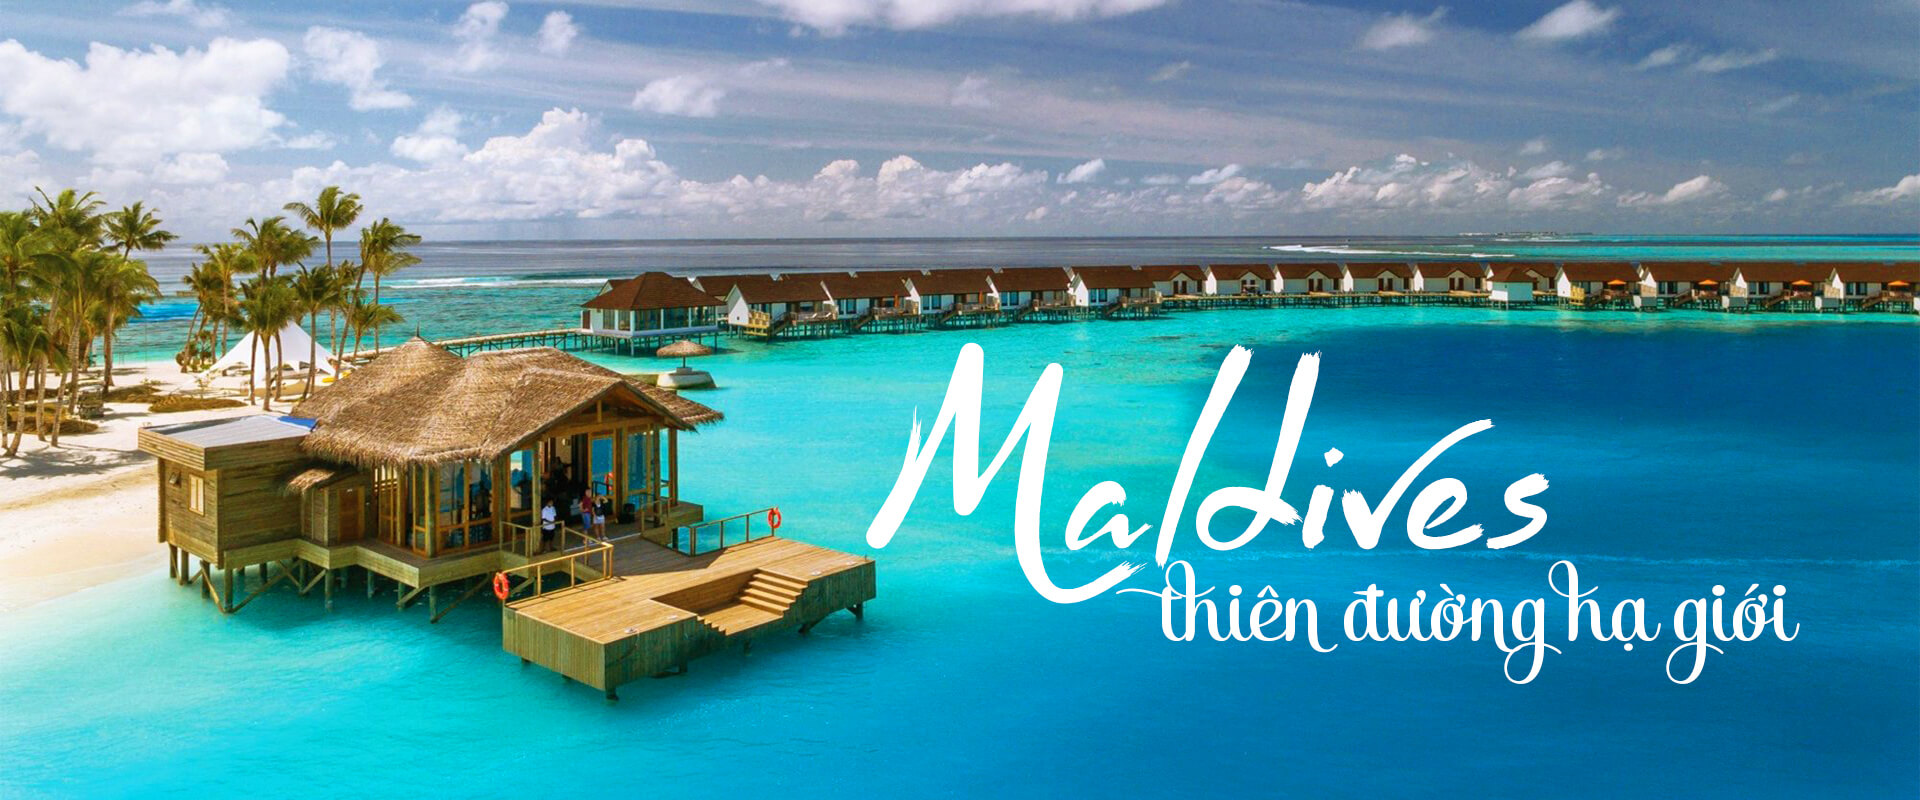 Banner du lịch Maldives đẹp